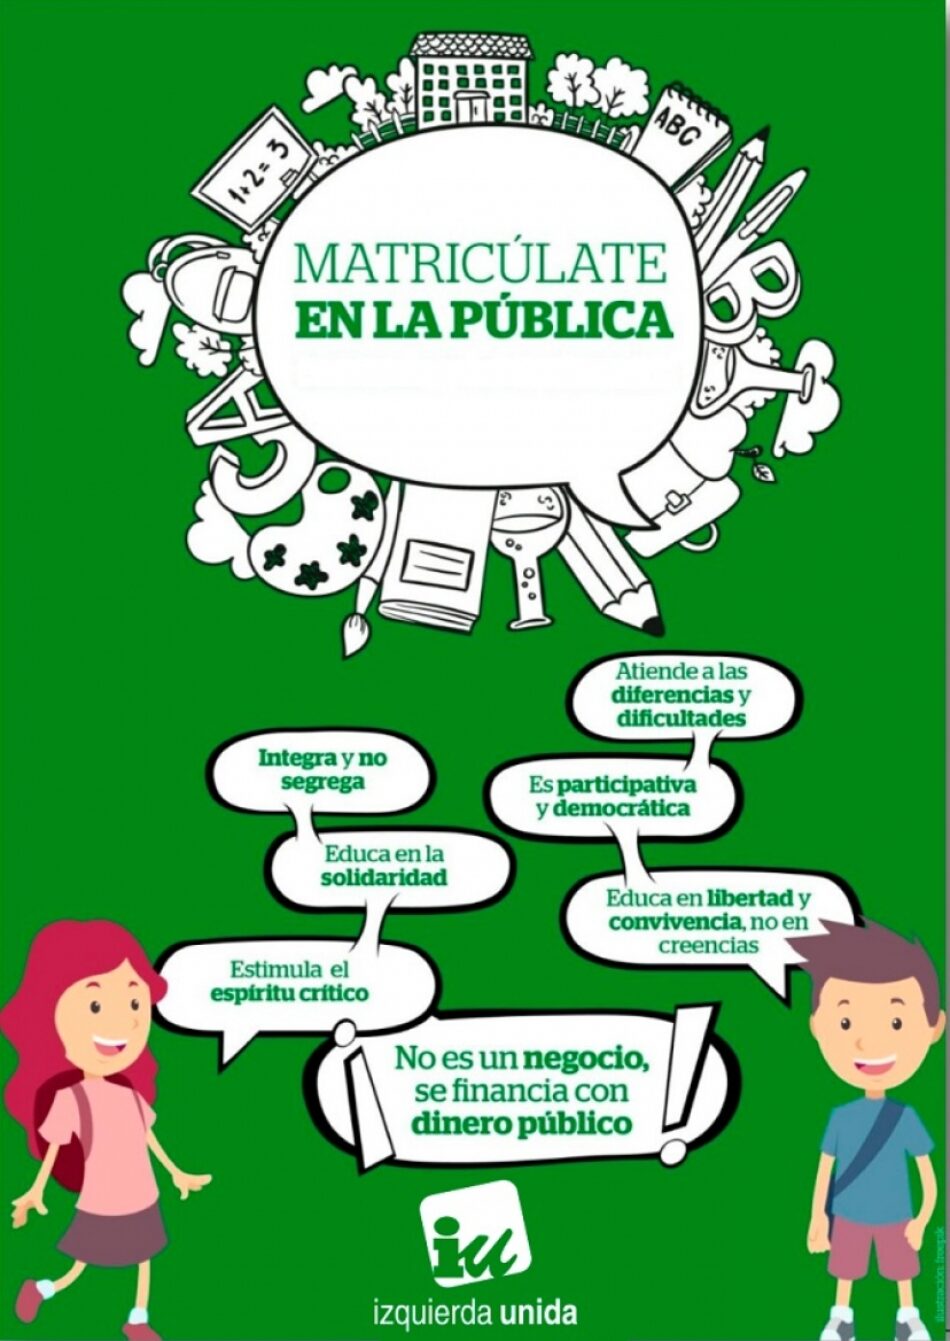 IU impulsa su campaña «Matricúlate en la pública» en defensa de un servicio público fundamental y necesario